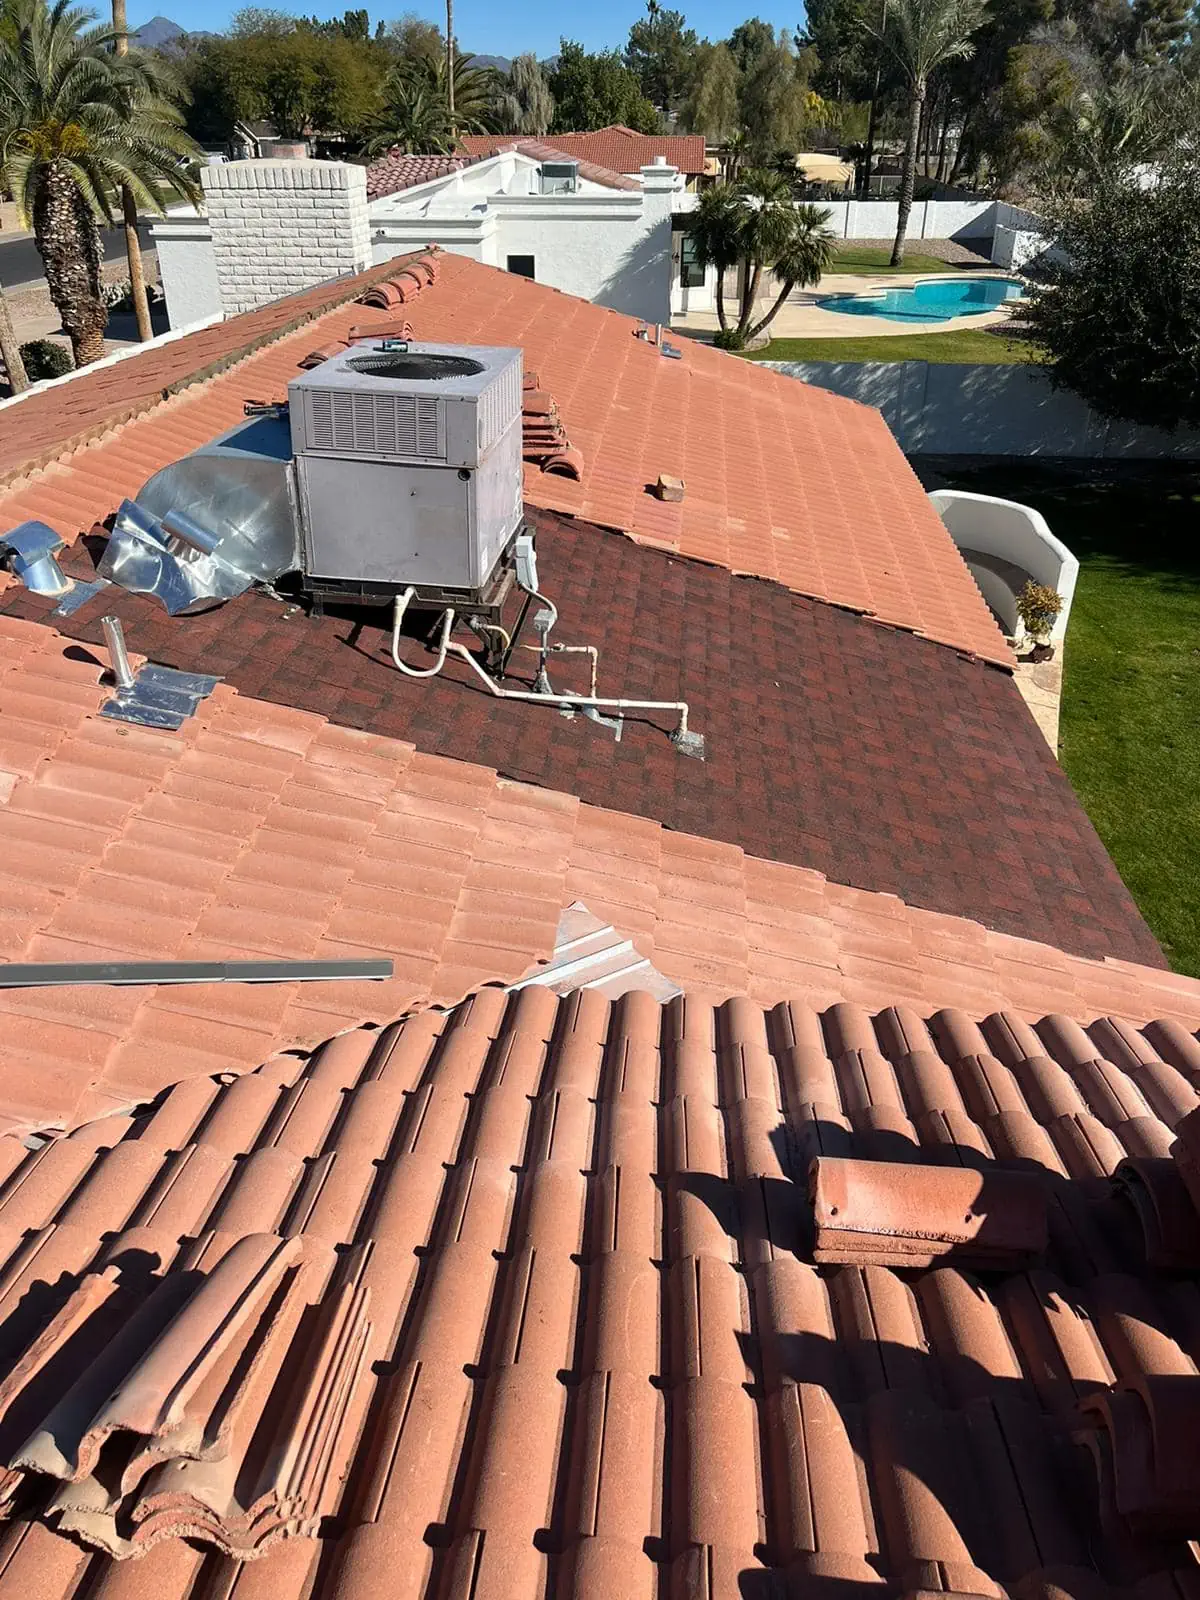 tile roofing repair in phoenix complete